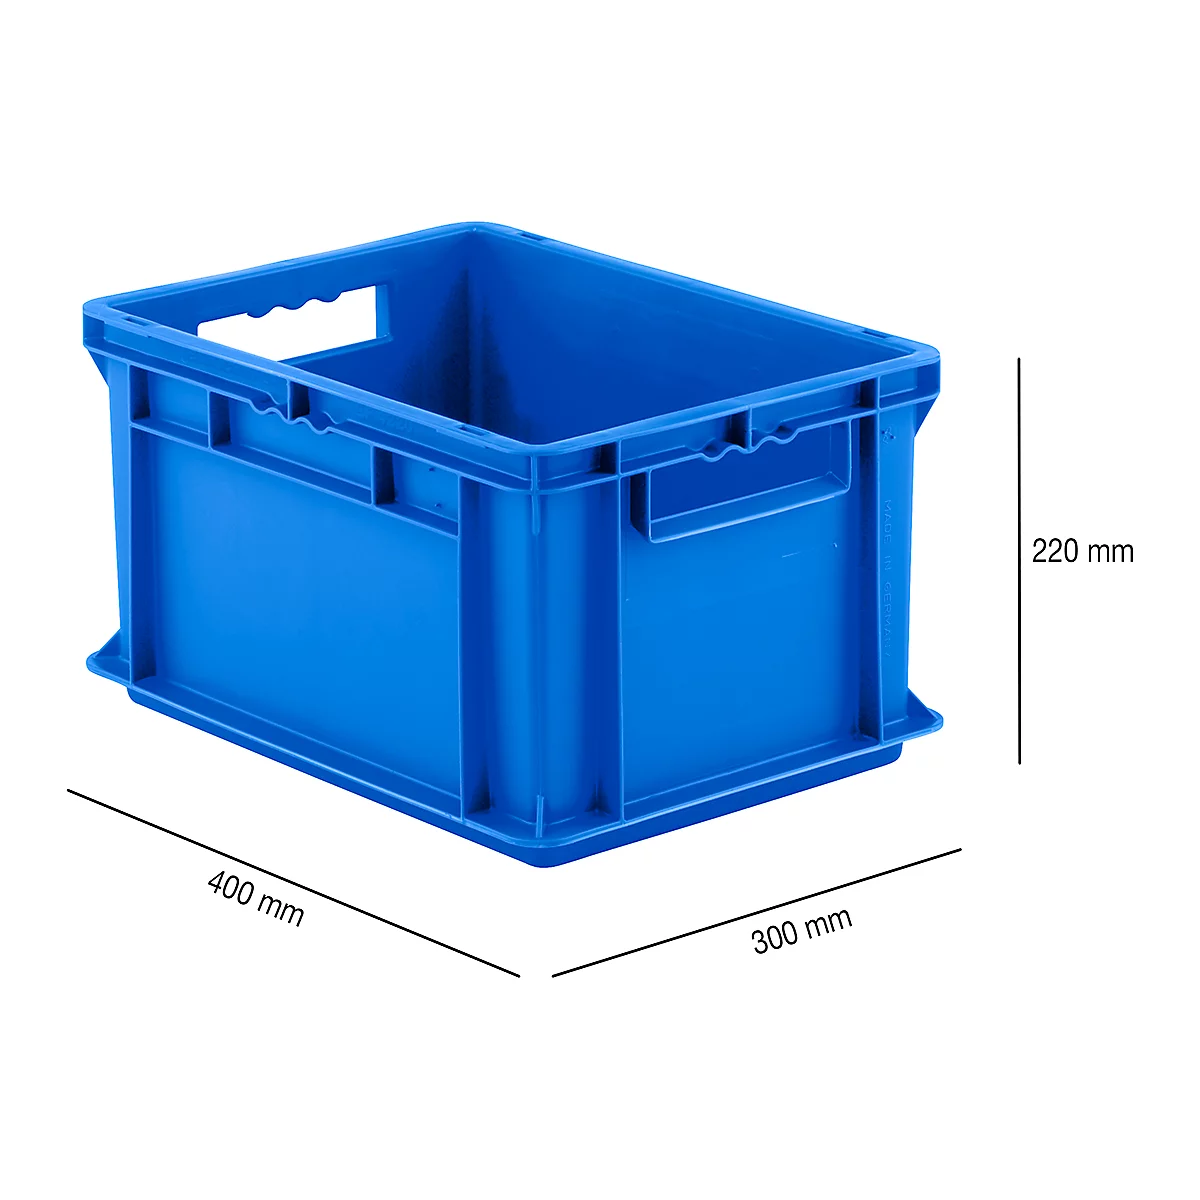 Kasten im EURO-Maß EF 4220, L 400 x B 300 x H 220 mm, Inhalt 20,4 l, Tragkraft 15 kg, stapelbar, Polypropylen, blau